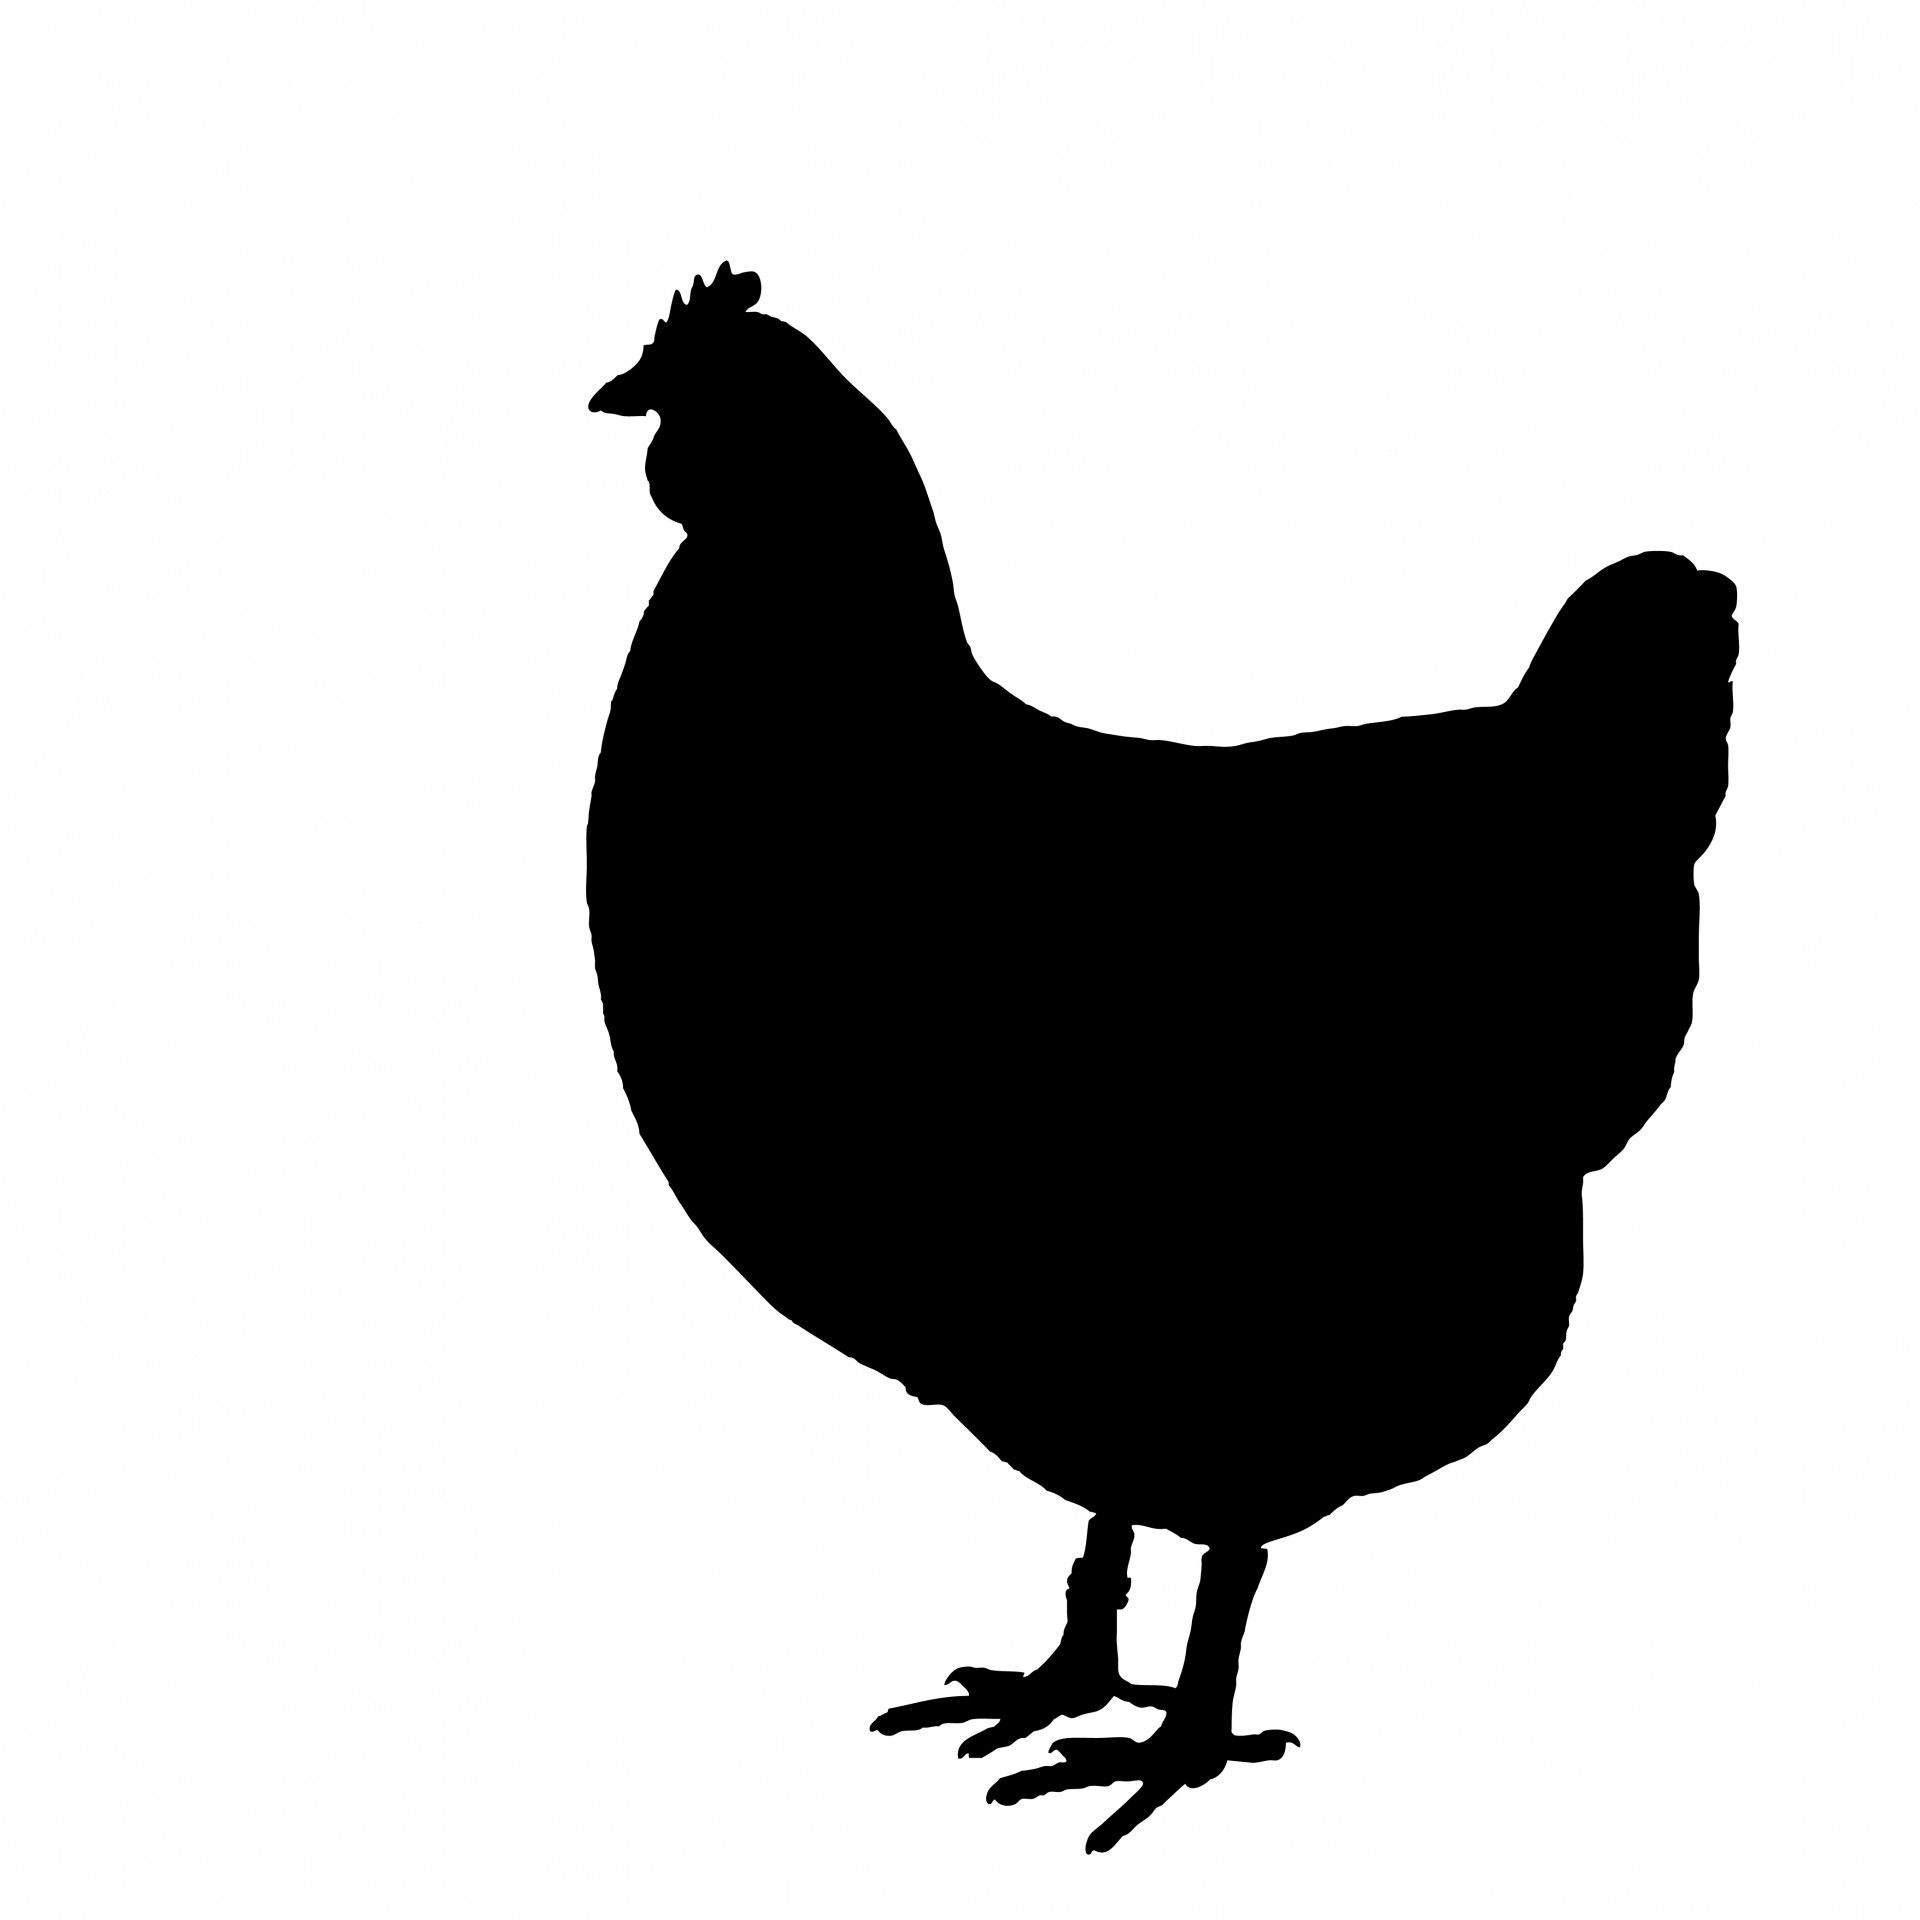 Free stock photo public. Chicken clipart silhouette